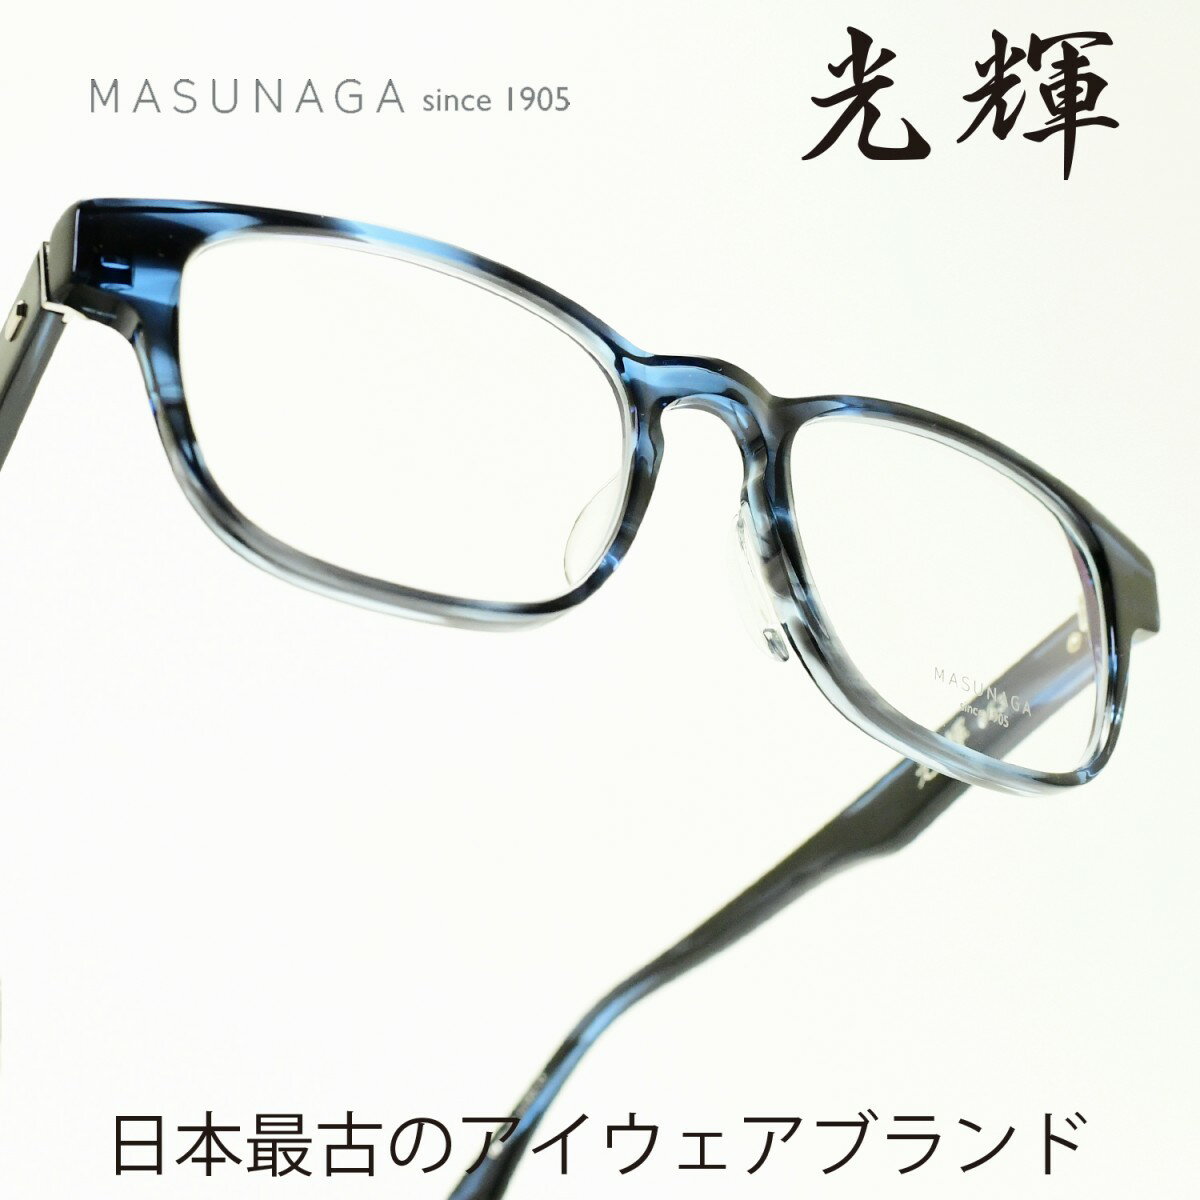 増永眼鏡 メガネ レディース 増永眼鏡 MASUNAGA光輝 063 col-35 BLUEメガネ 眼鏡 めがね メンズ レディース おしゃれブランド 人気 おすすめ フレーム 流行り 度付き　レンズ